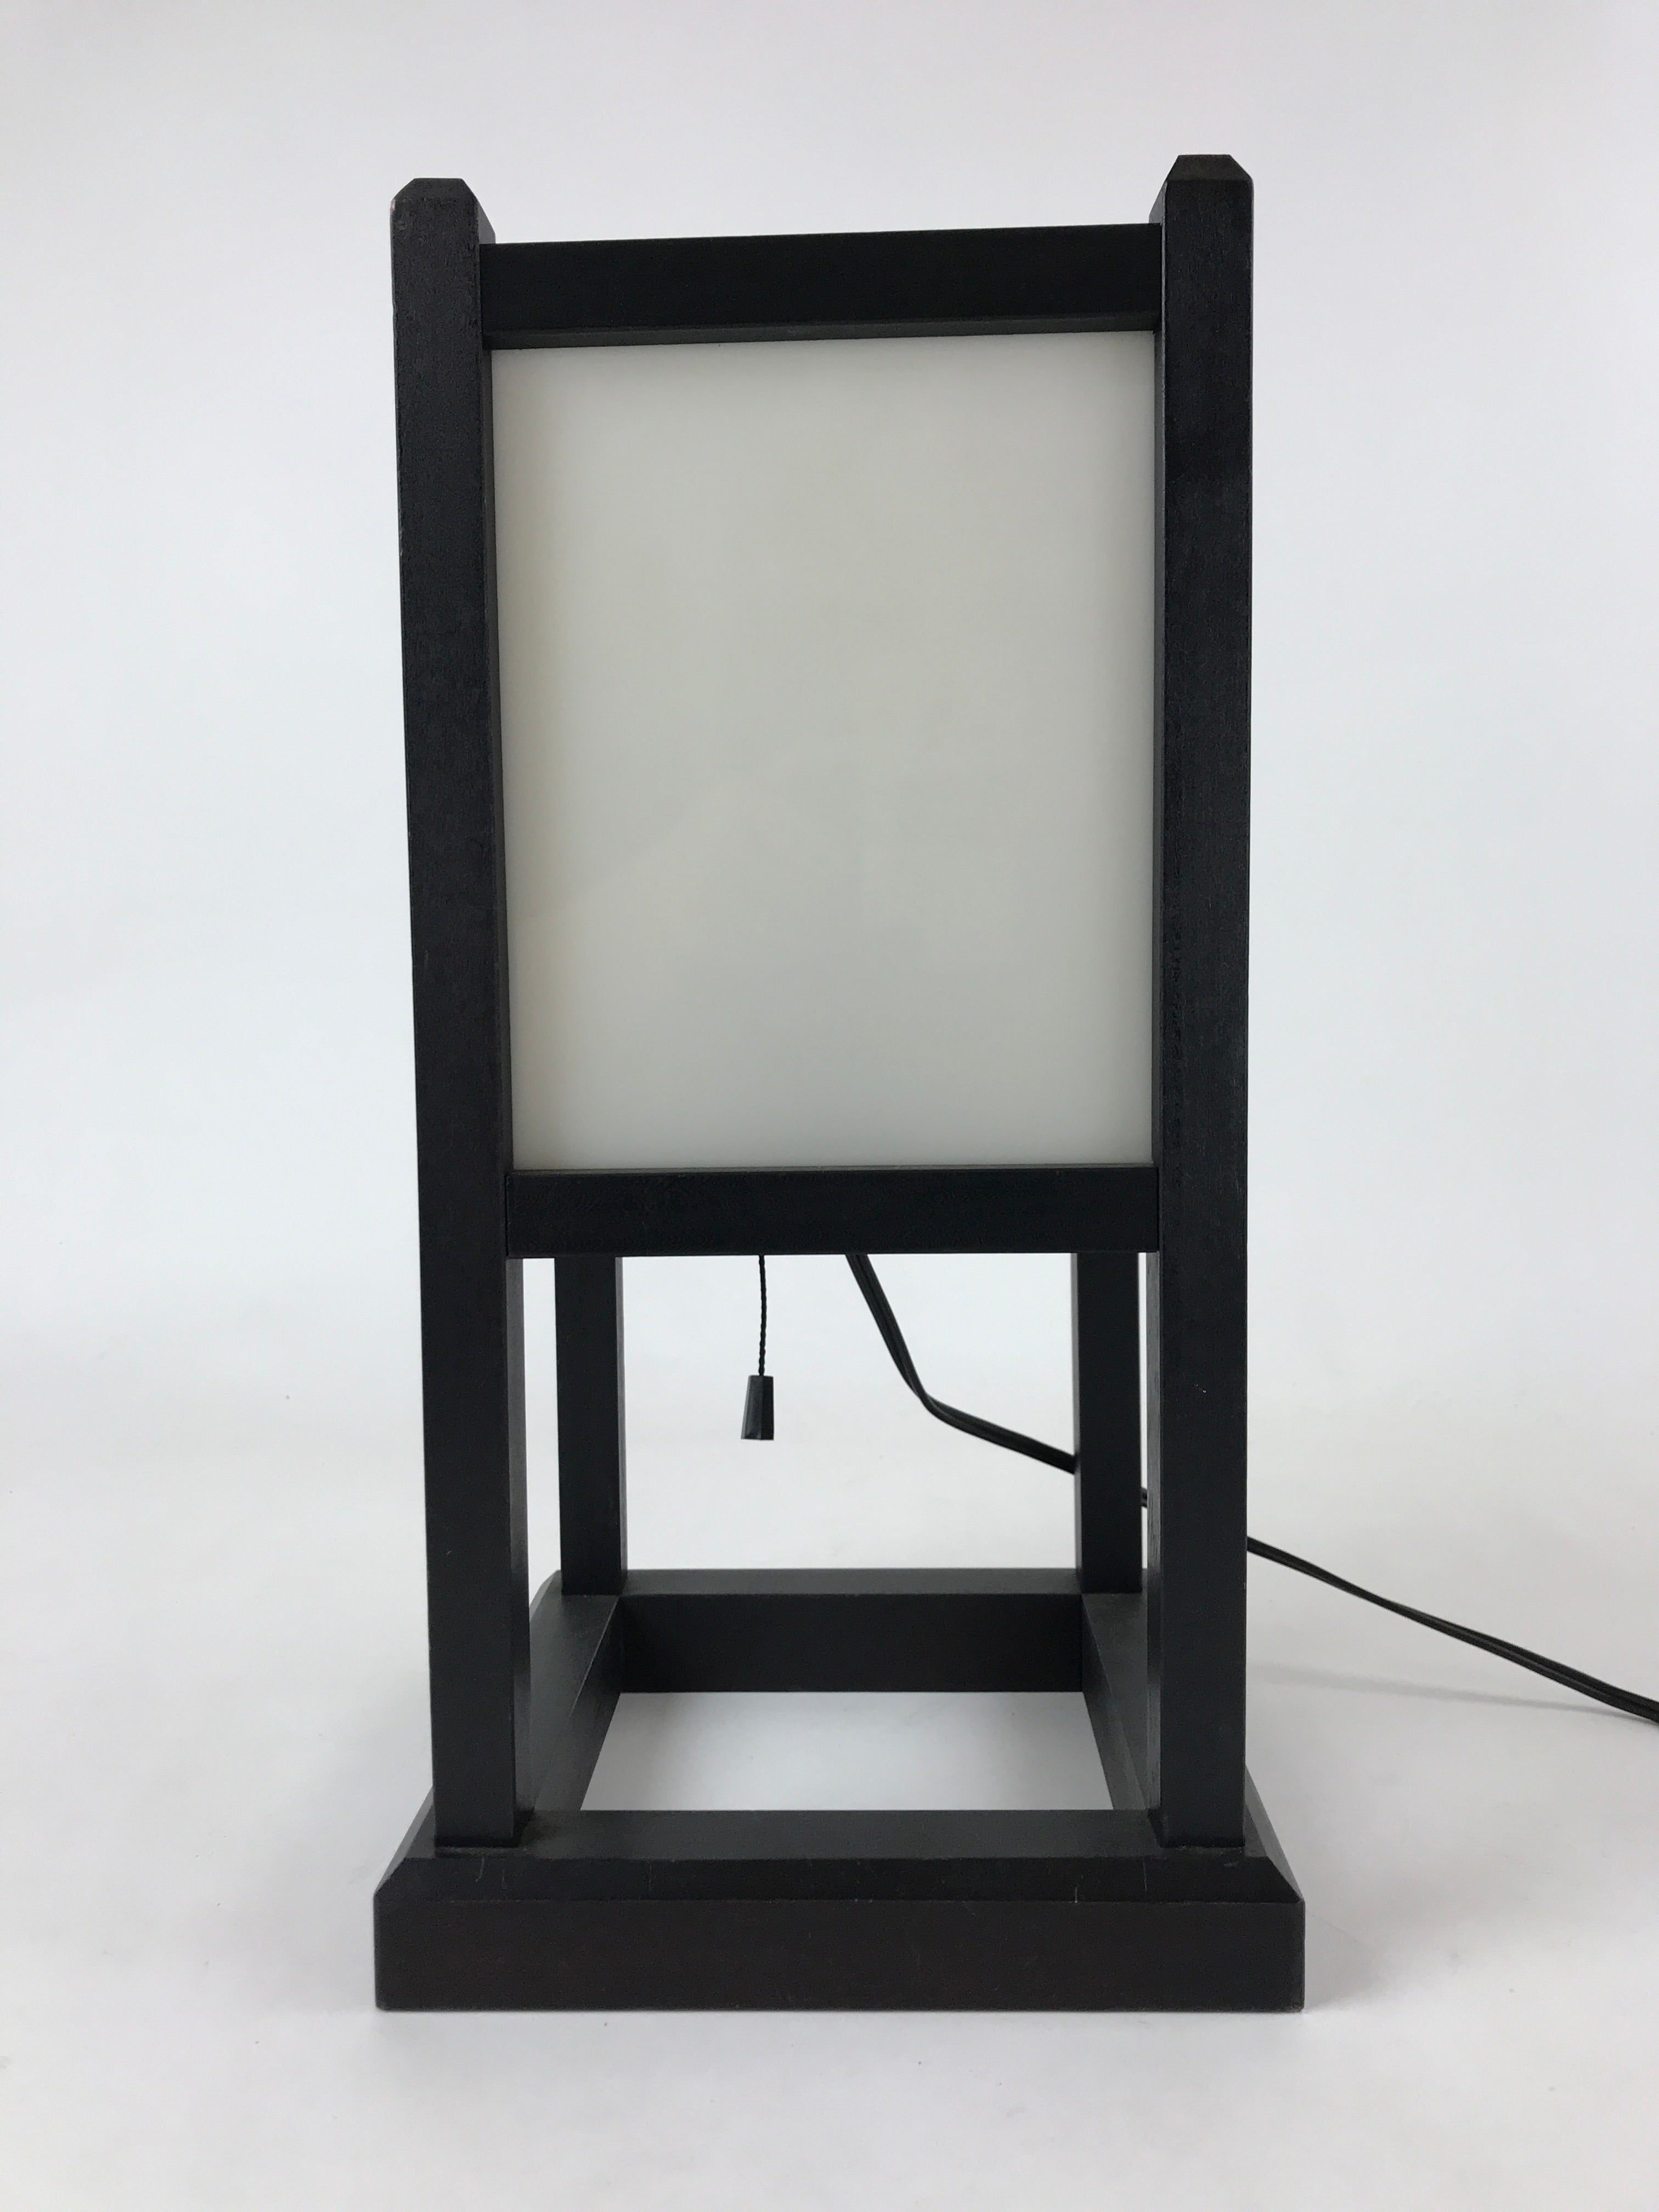 Japanese Electric Lantern Floor Lamp Vtg Table Lamp Wood Frame Resin Panel LT66